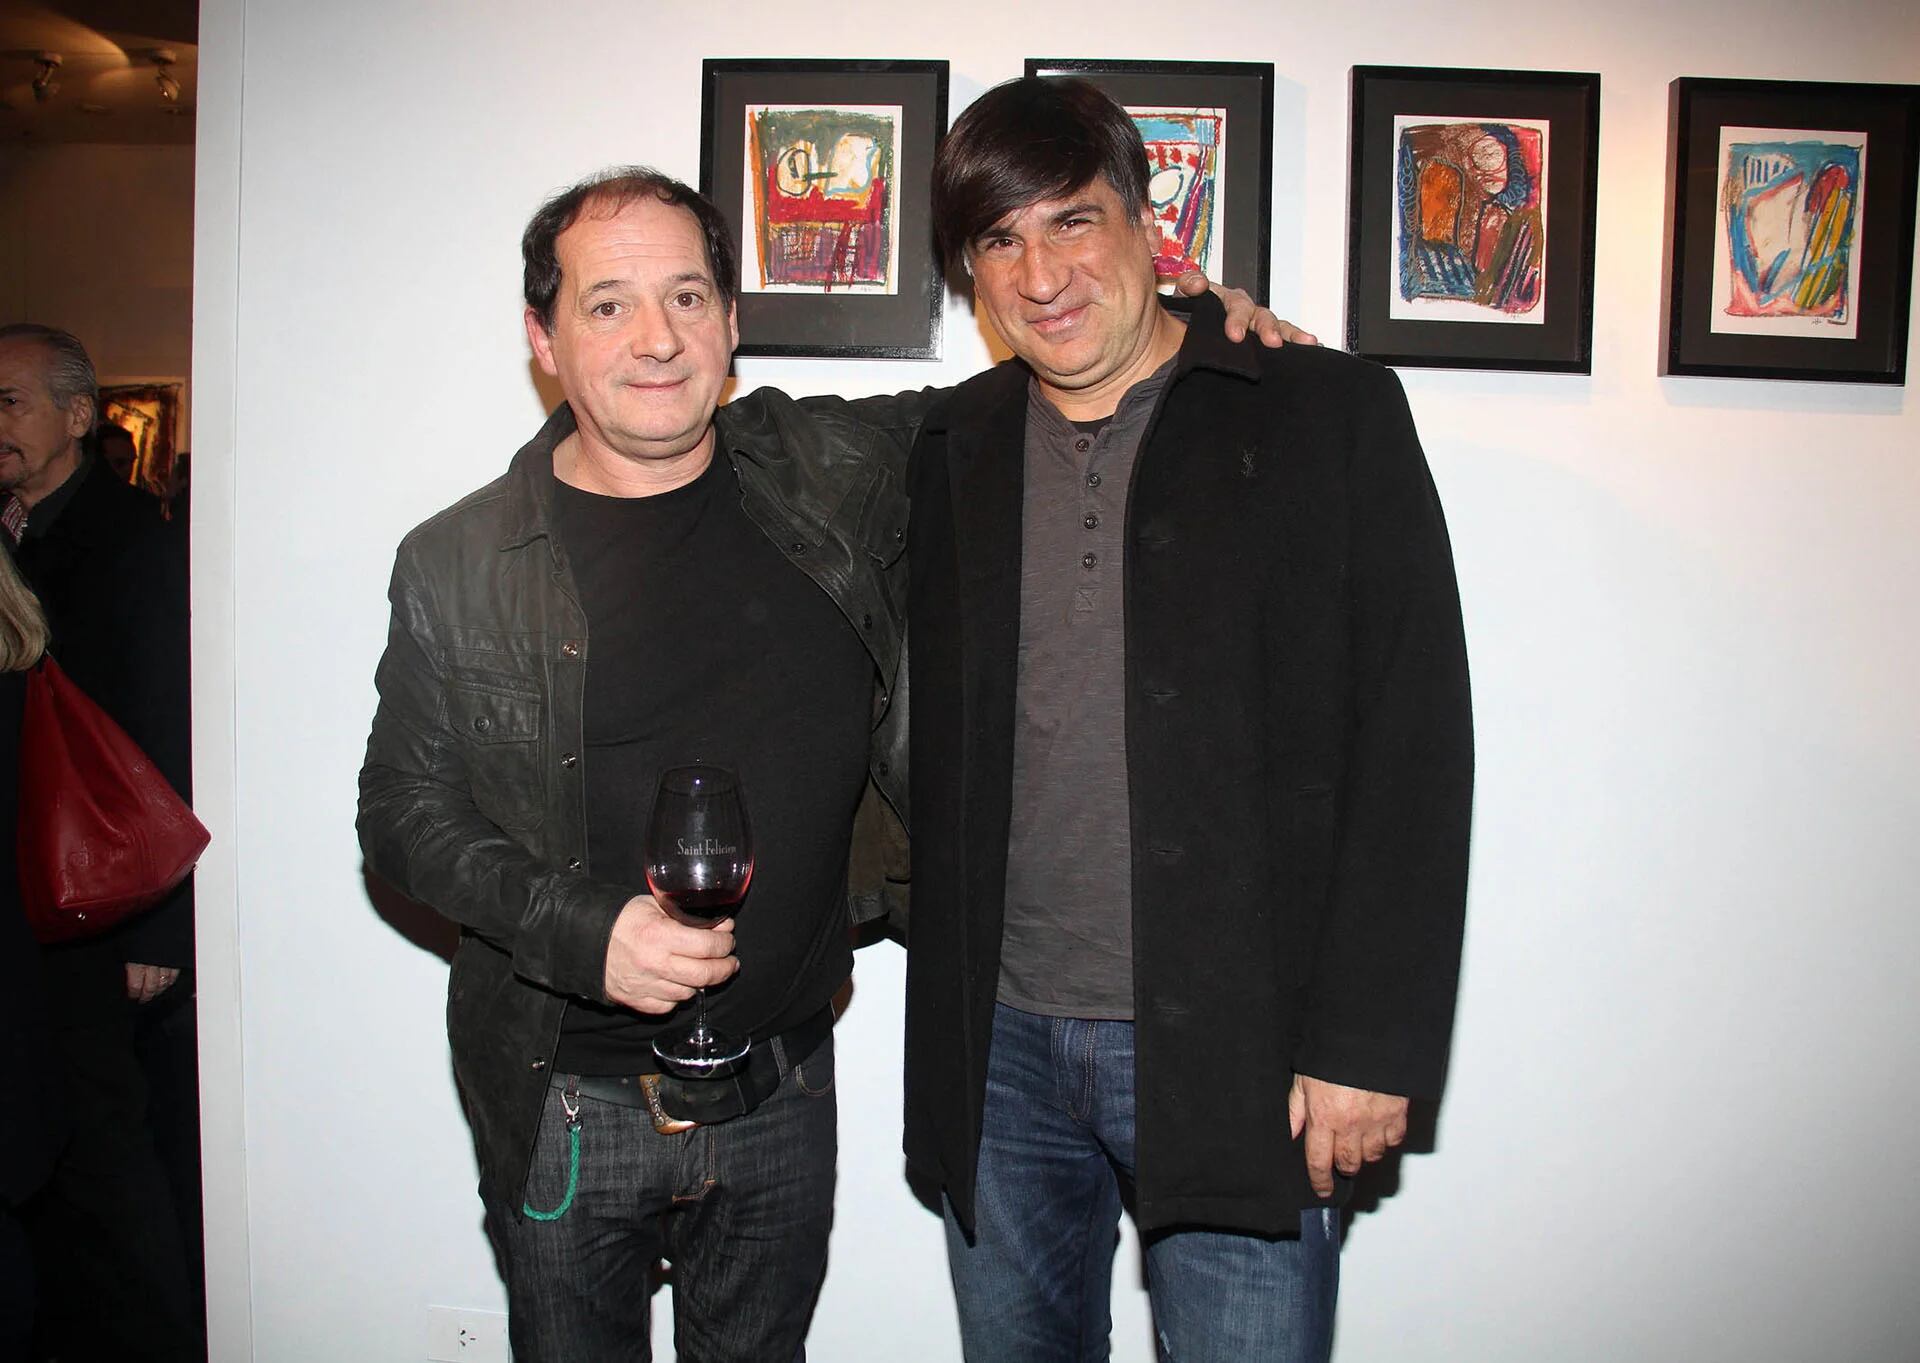 El artista junto al director de cine y televisión Daniel Barone